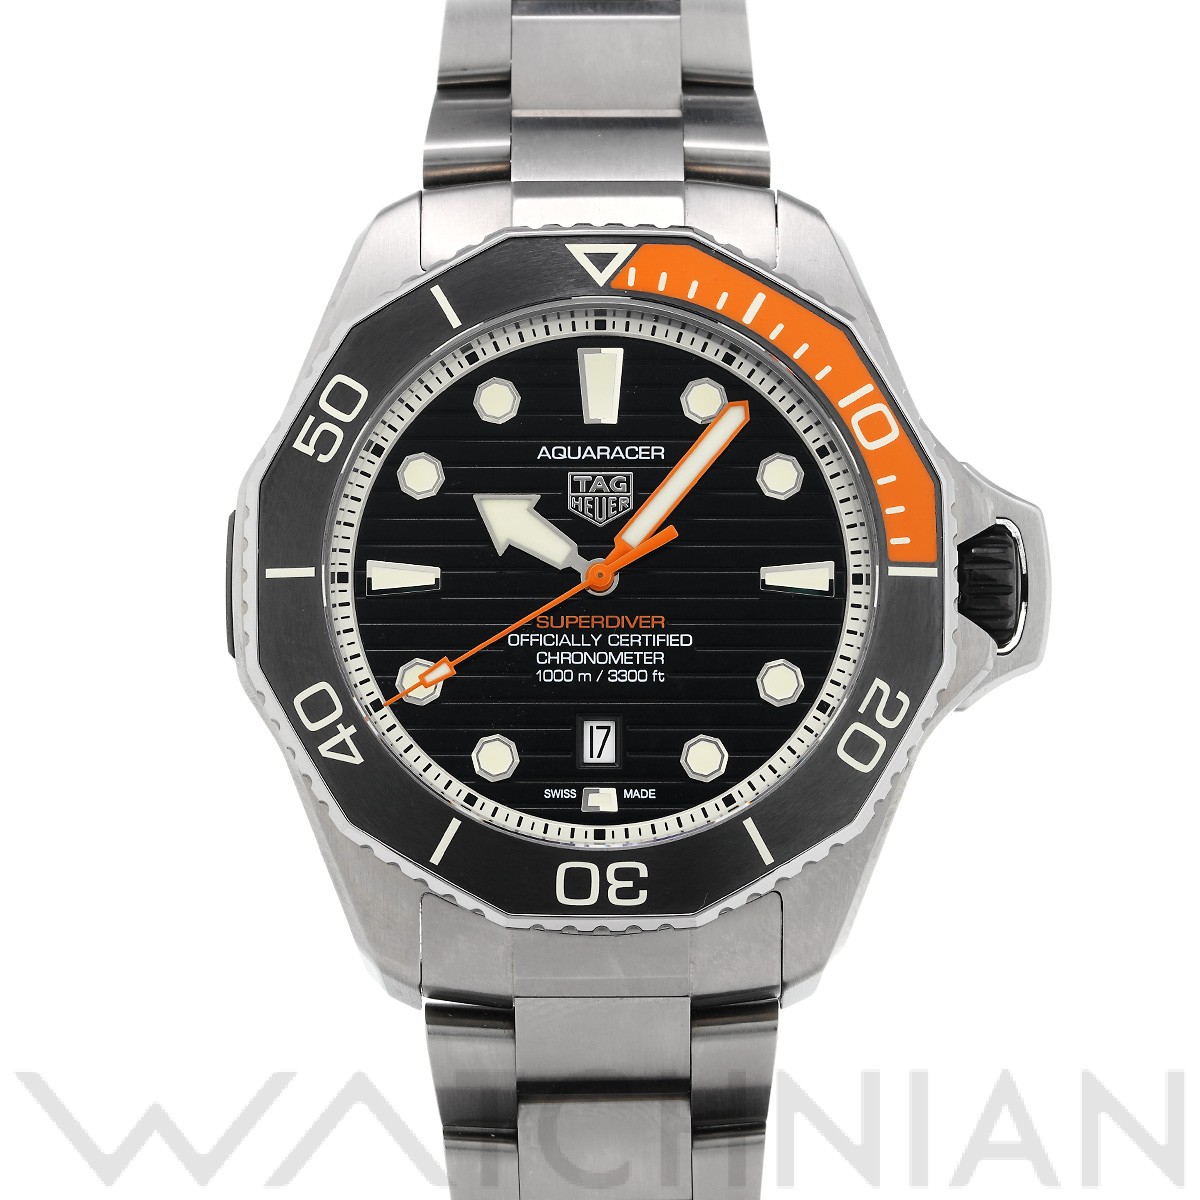 タグ ホイヤー TAG HEUER WBP5A8A.BF0619 ブラック メンズ 腕時計